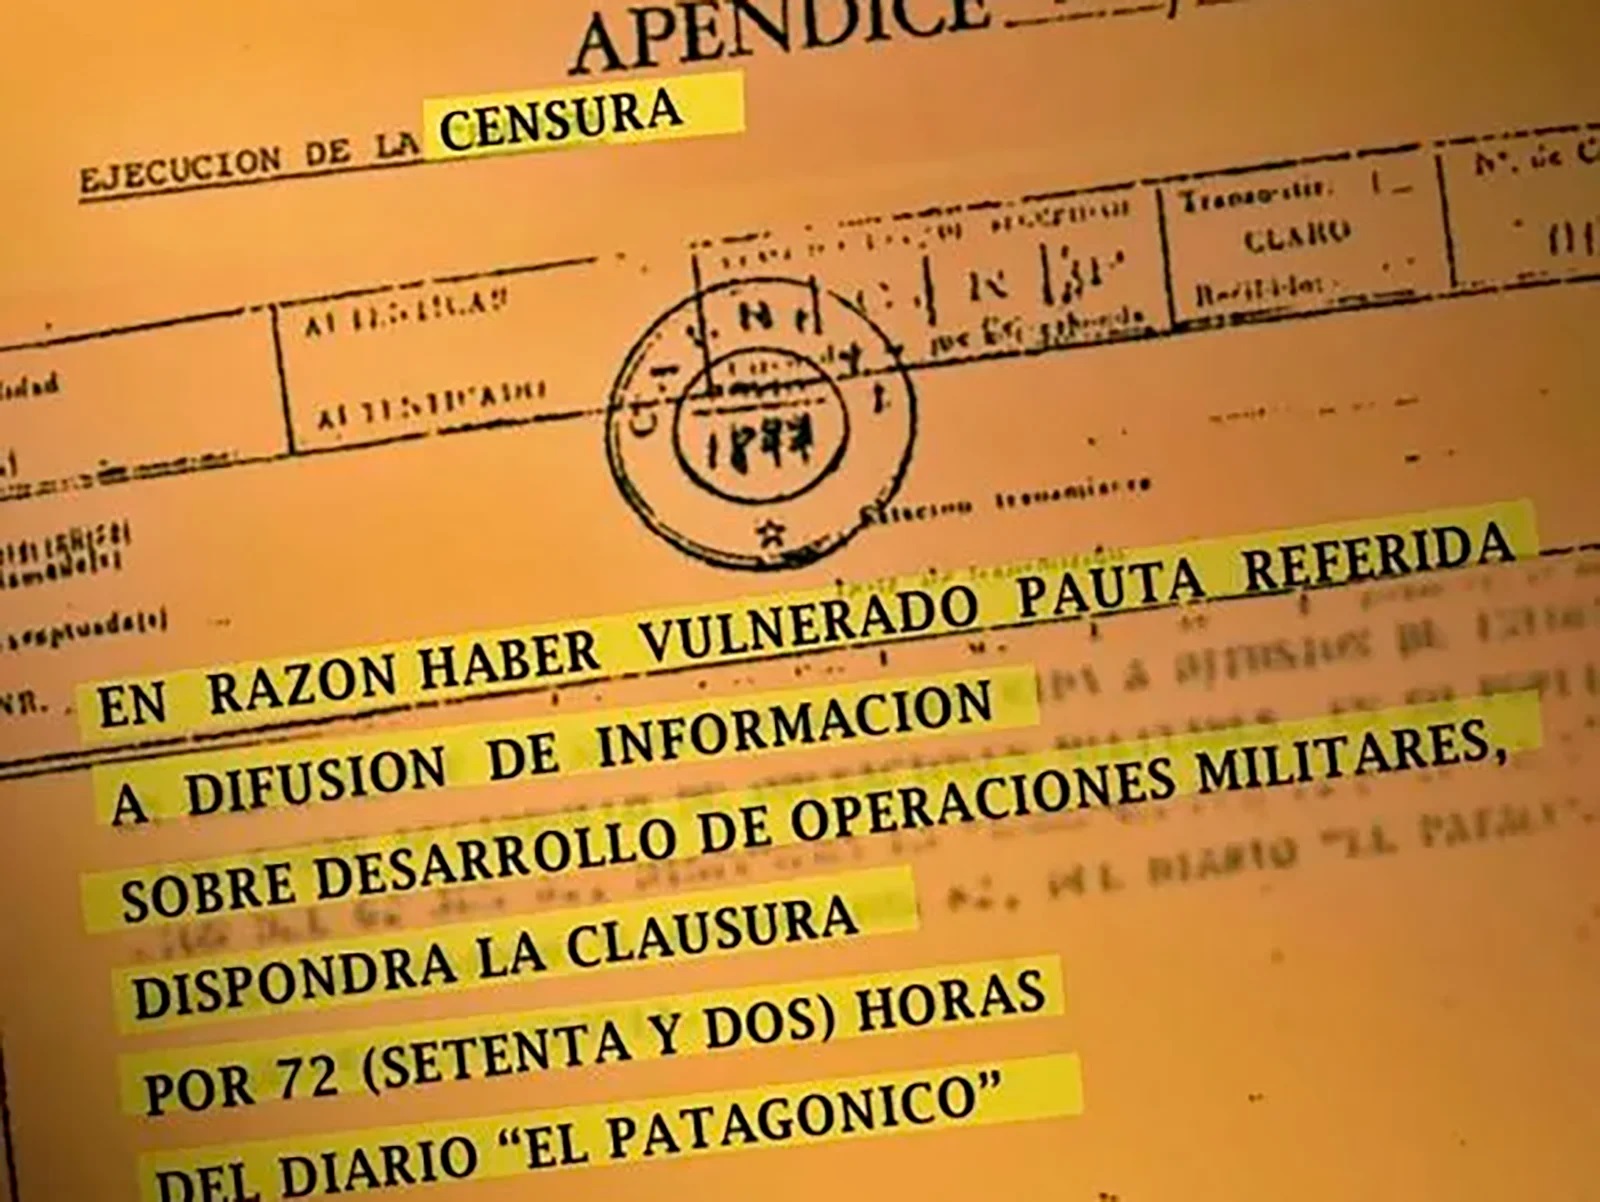 Las clausuras de medios que ordenó la Junta Militar para controlar la difusión de la guerra